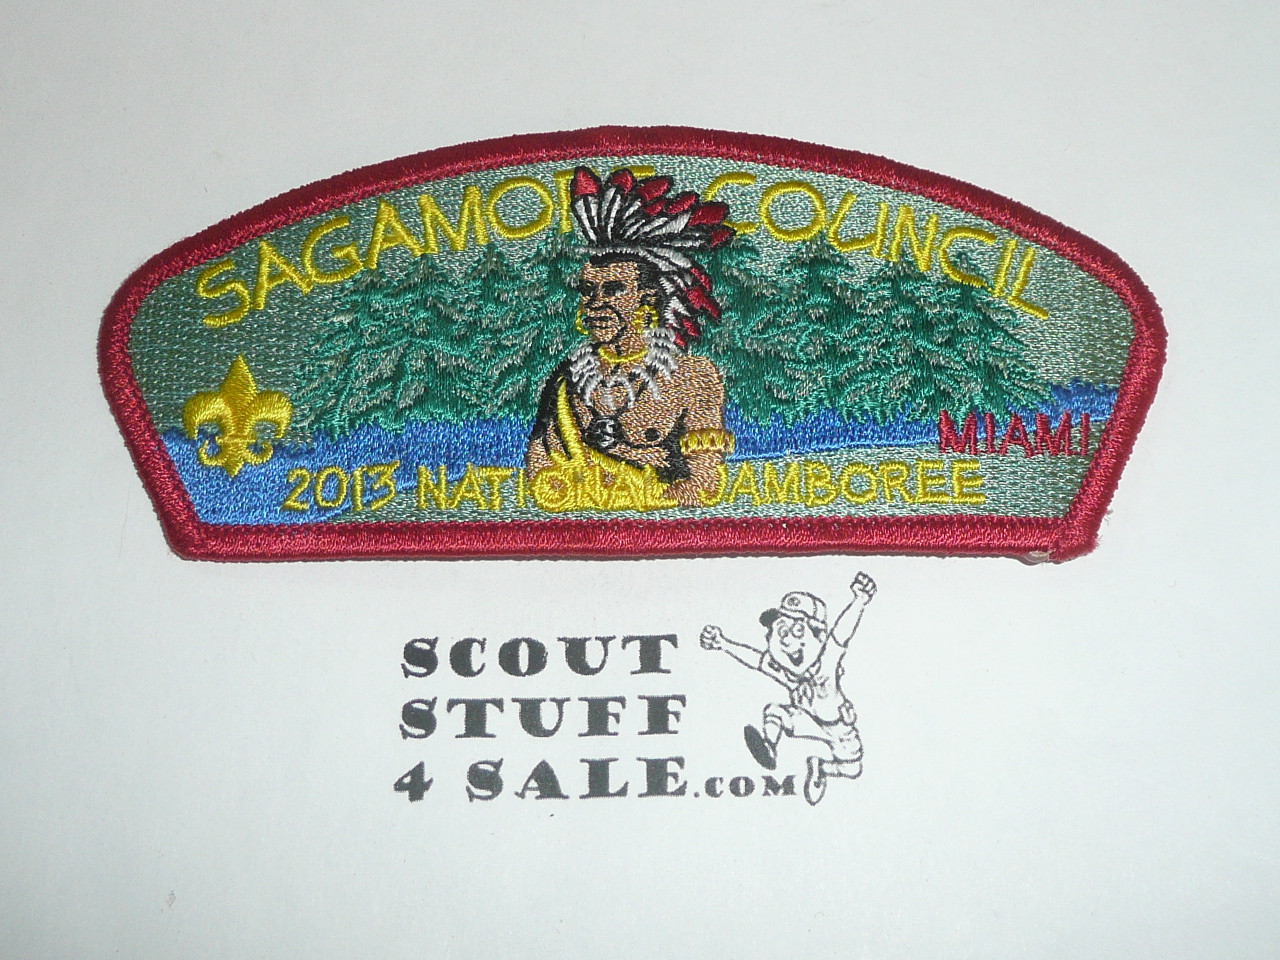 2013 National Jamboree JSP - Sagamore Council